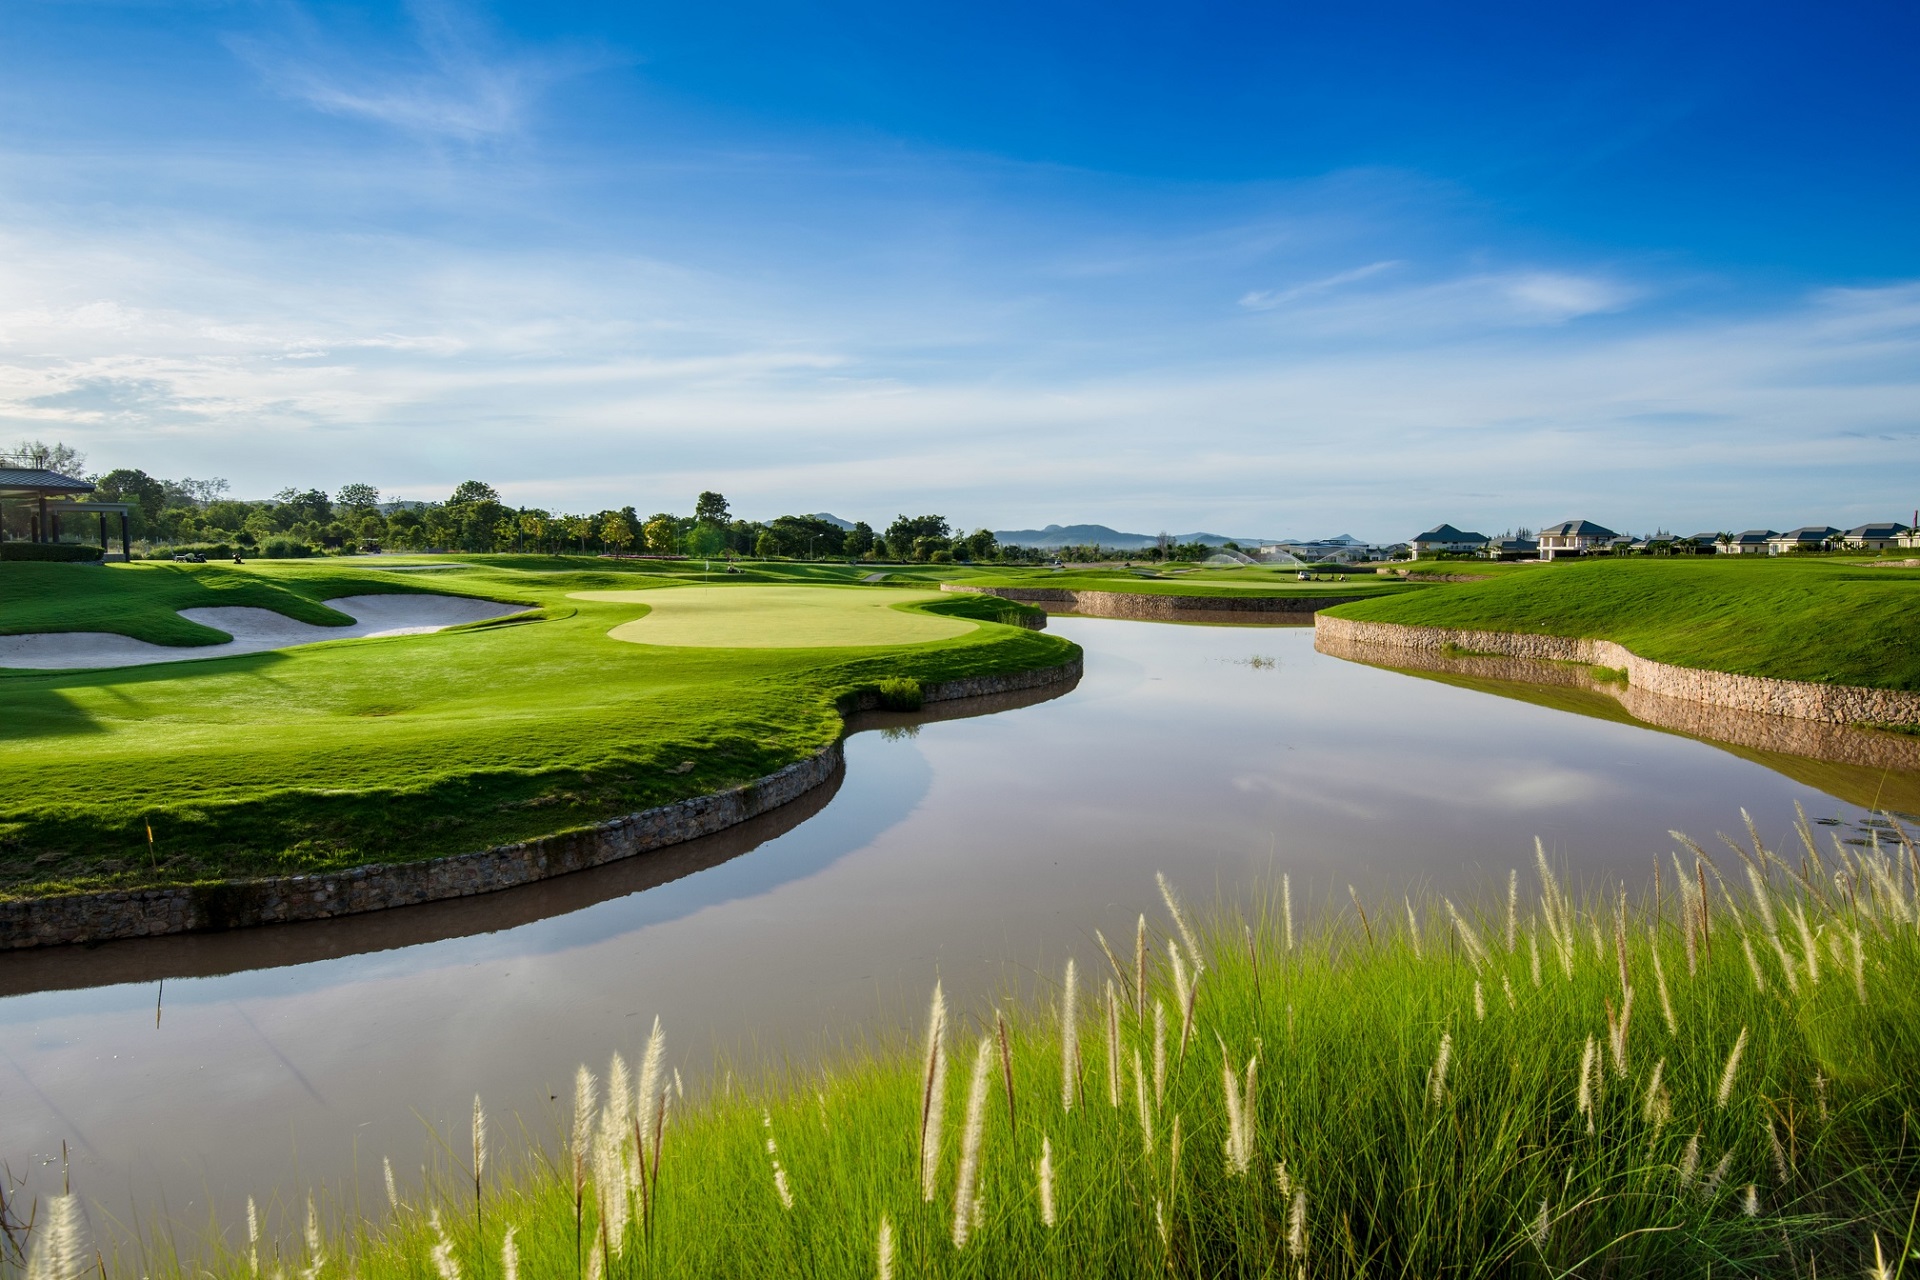 Se Black Mountain Golf Club i Hua Hin. Billedet viser en velholdt golfbane med grønt græs og vandfunktioner. Få et indtryk af golfbanens